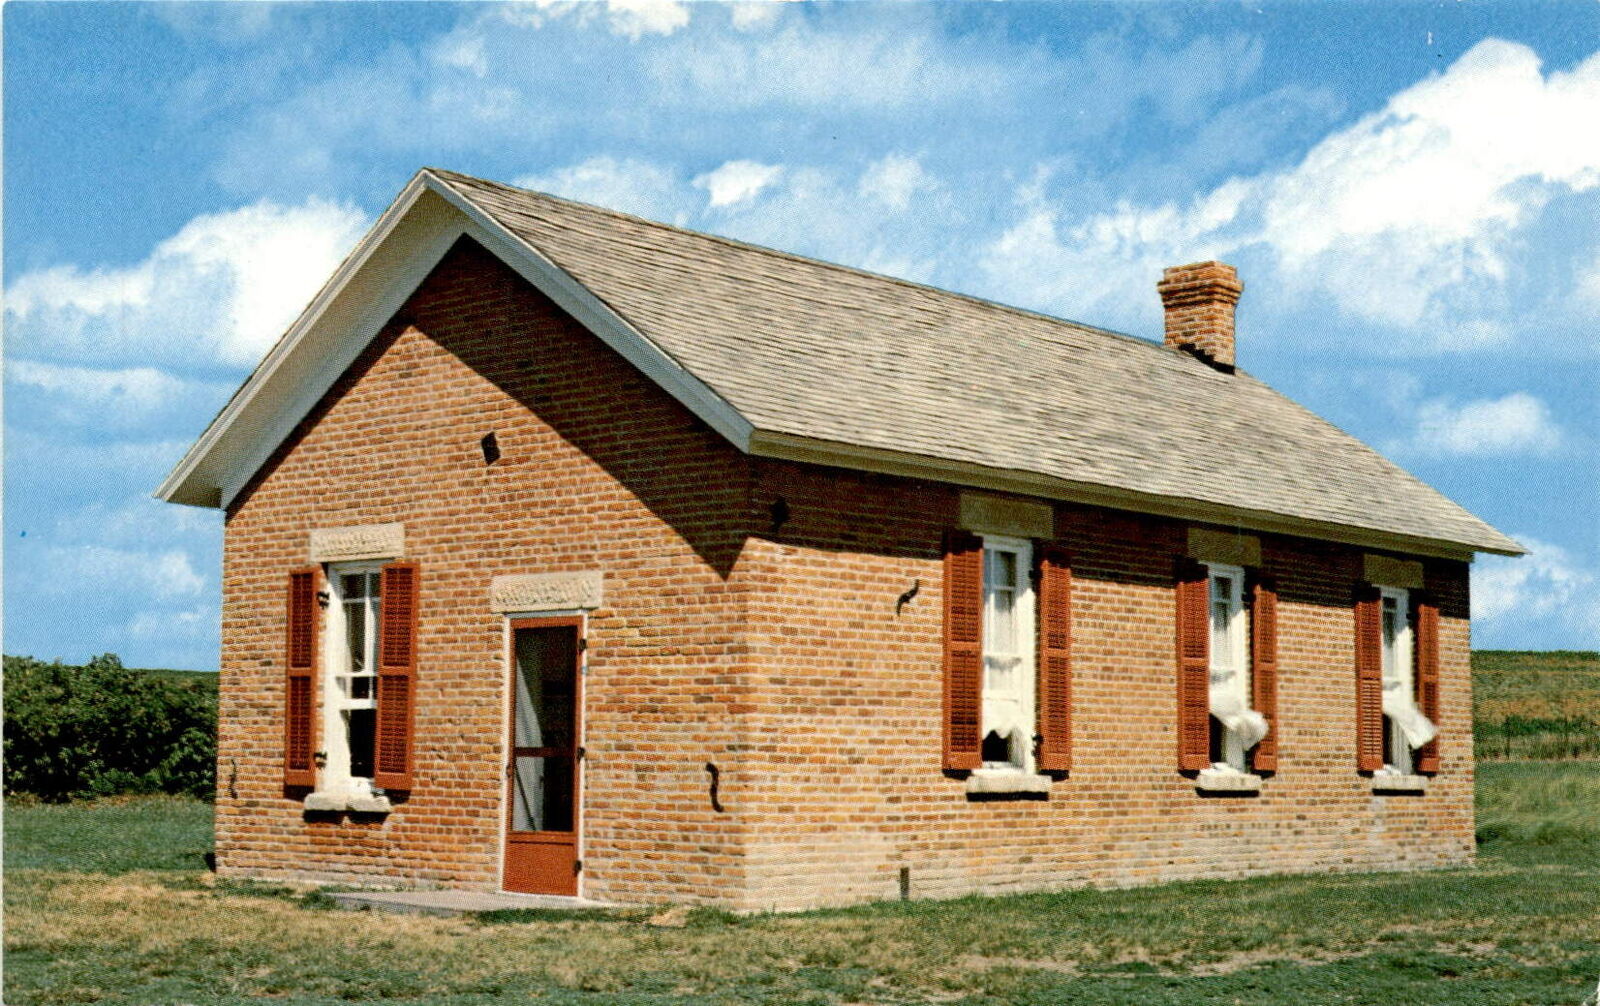 Freeman School, Homestead National Monument, pioneers, education, Postcard